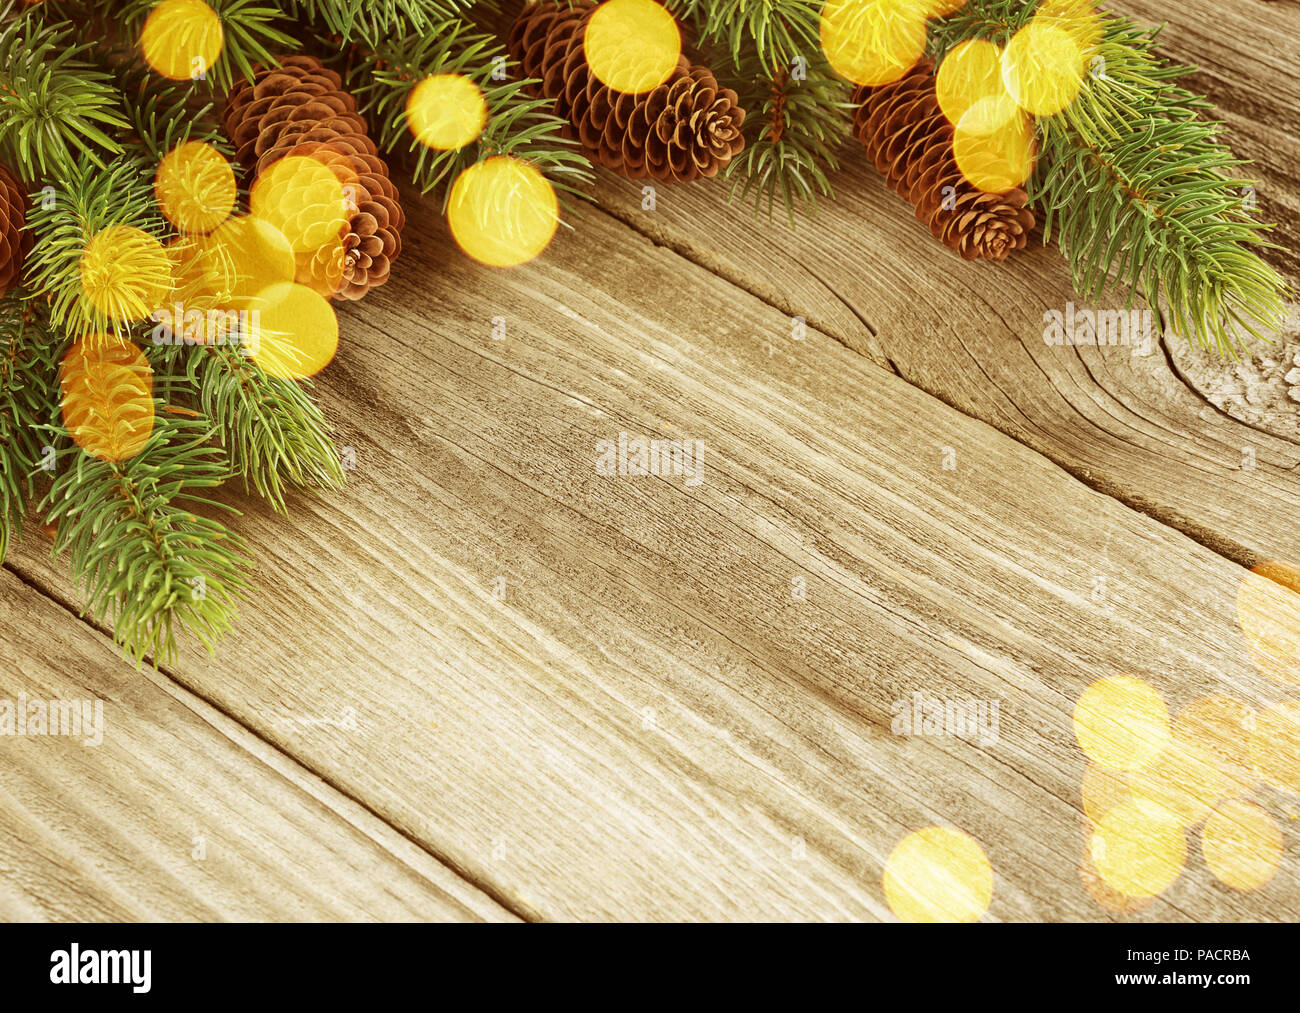 Cadre de Noël composé de pommes de pin, branches d'épinettes et des éclairs de lumière sur l'arrière-plan de vieux panneaux en bois non peint, avec copie-space Banque D'Images